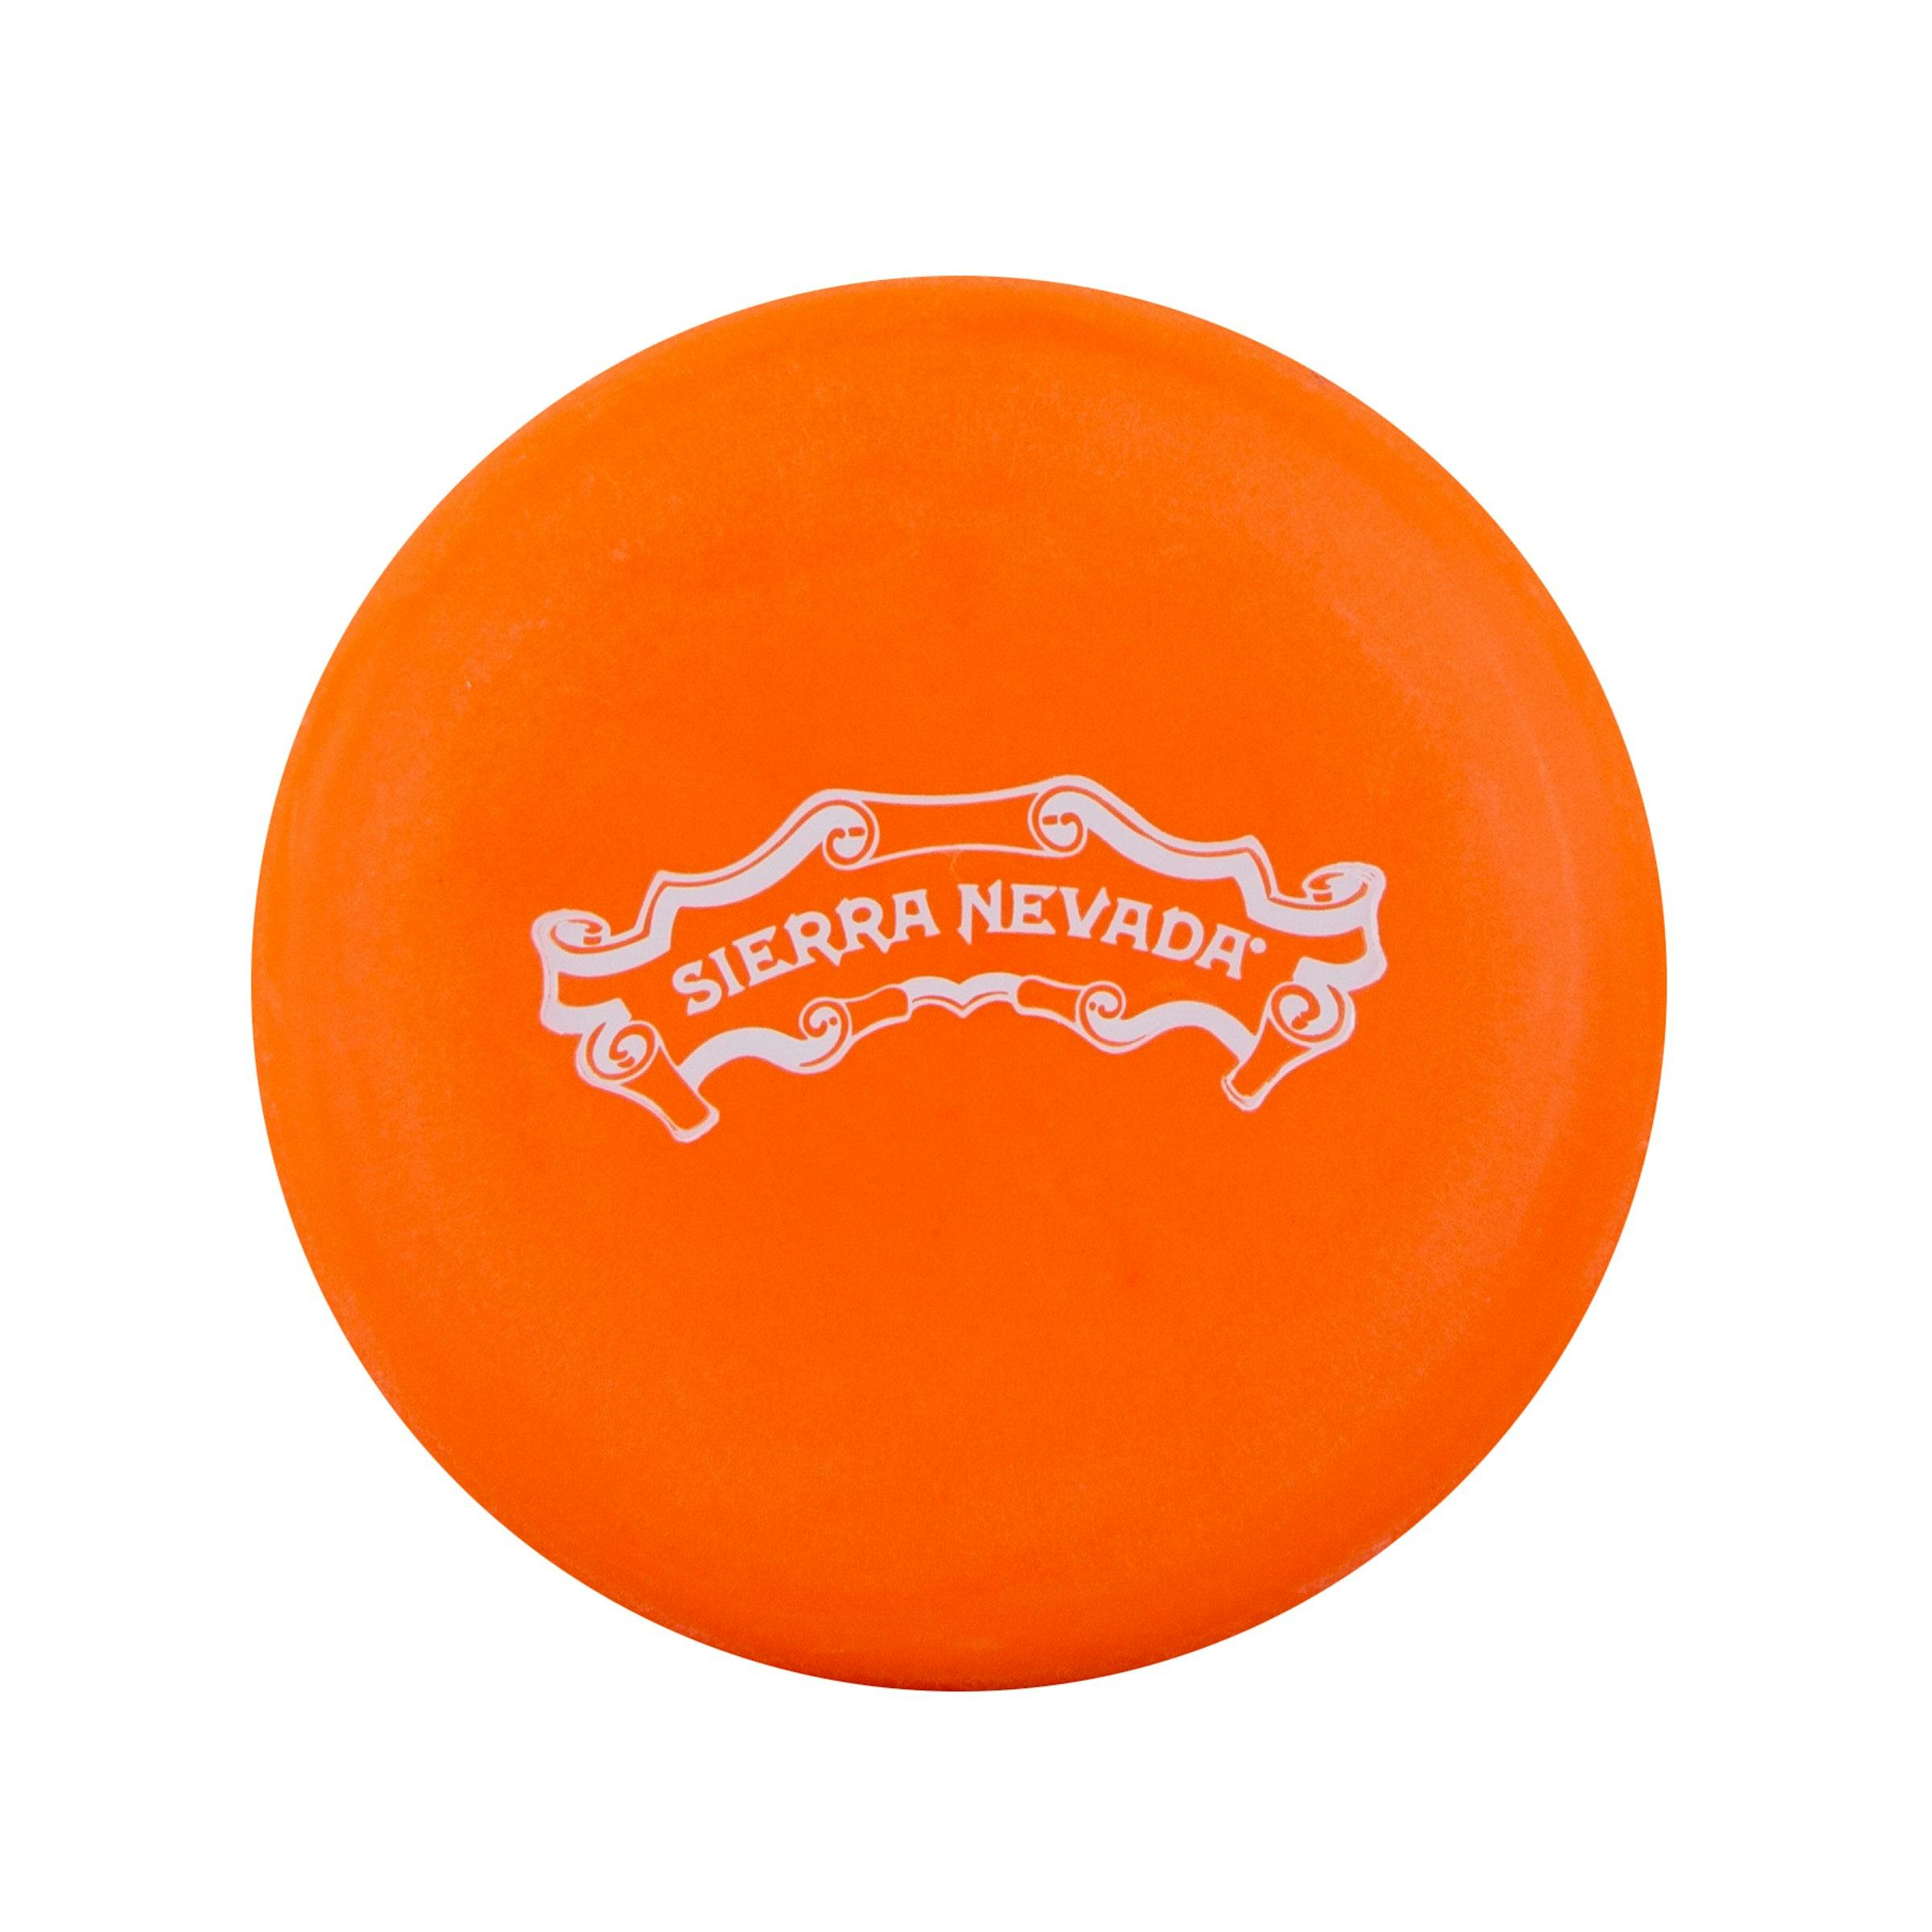 Sierra Nevada disc golf marker - orange